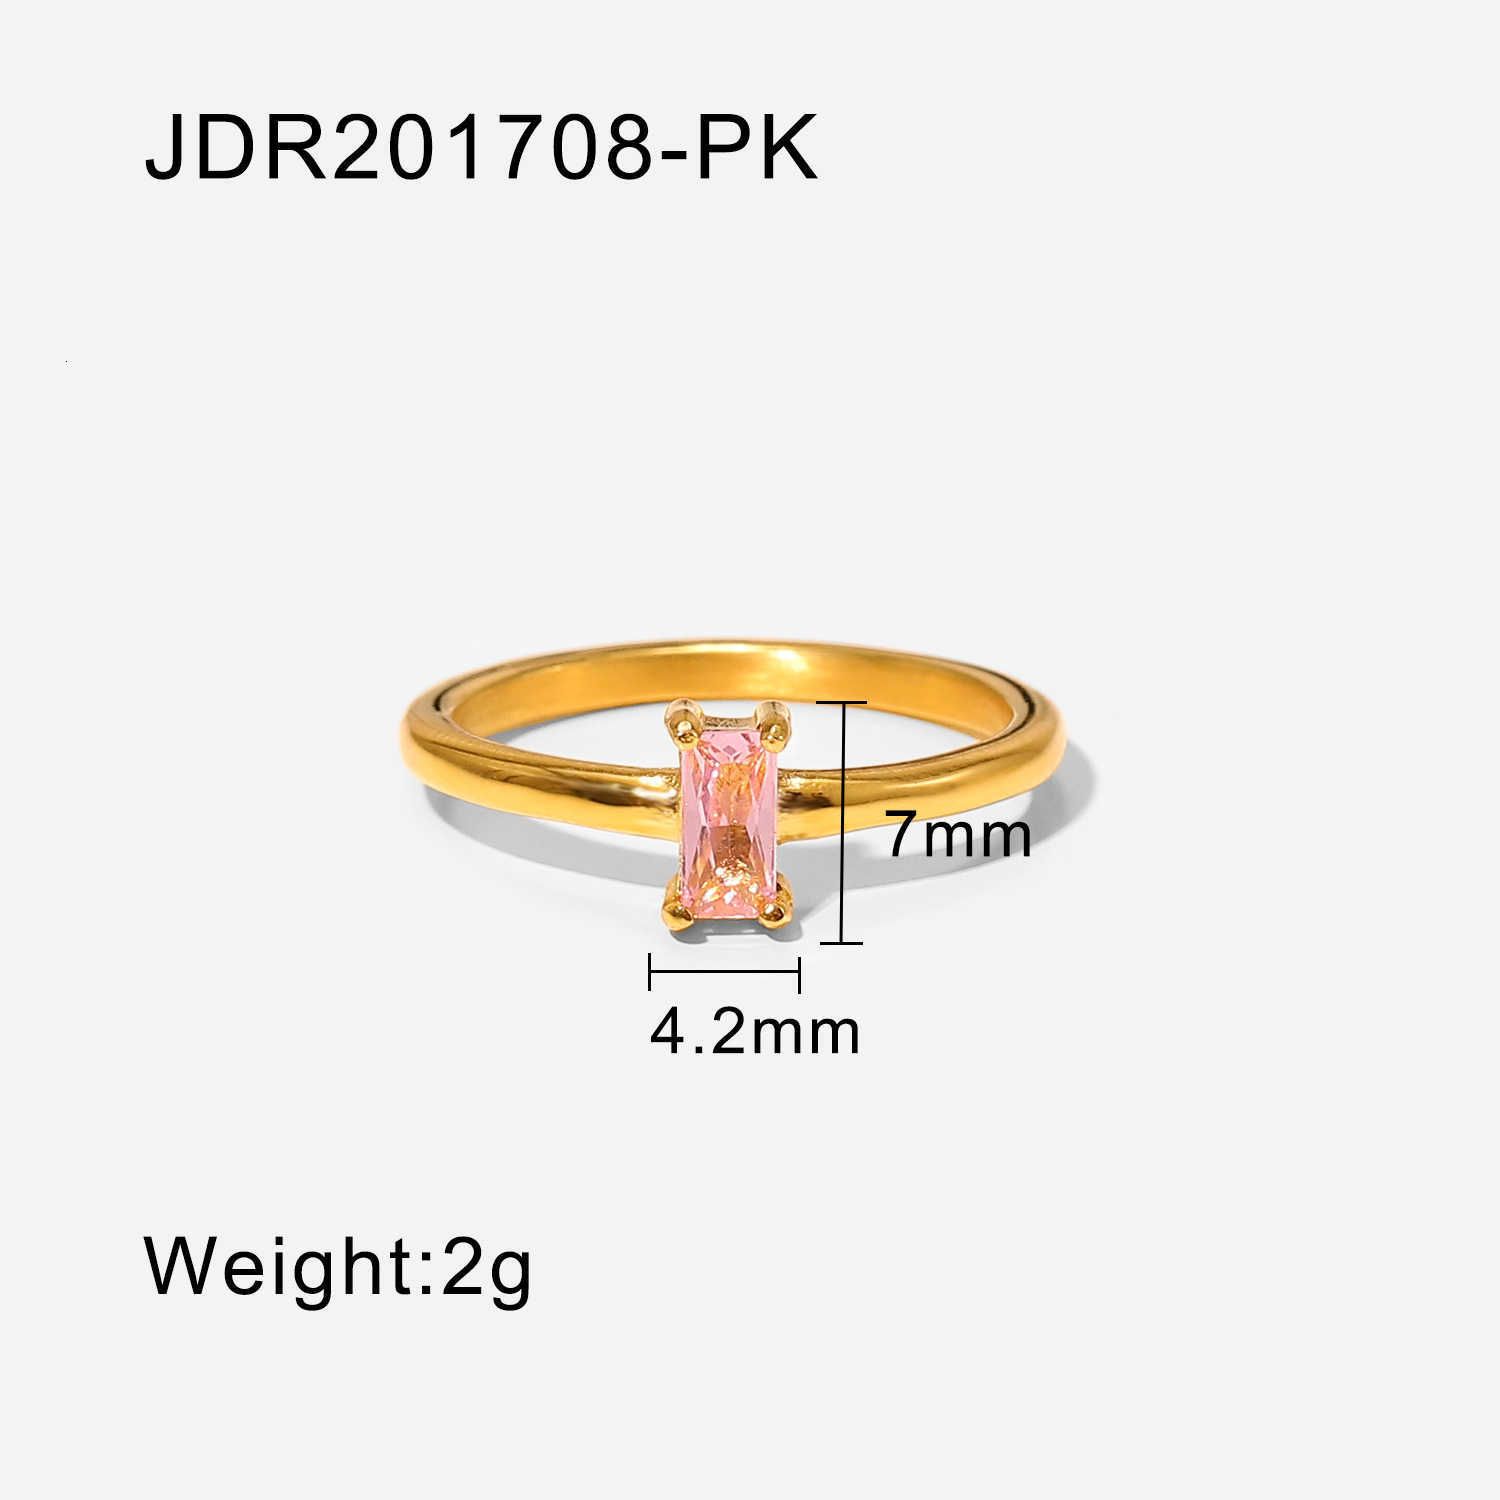 JDR201708-PK.